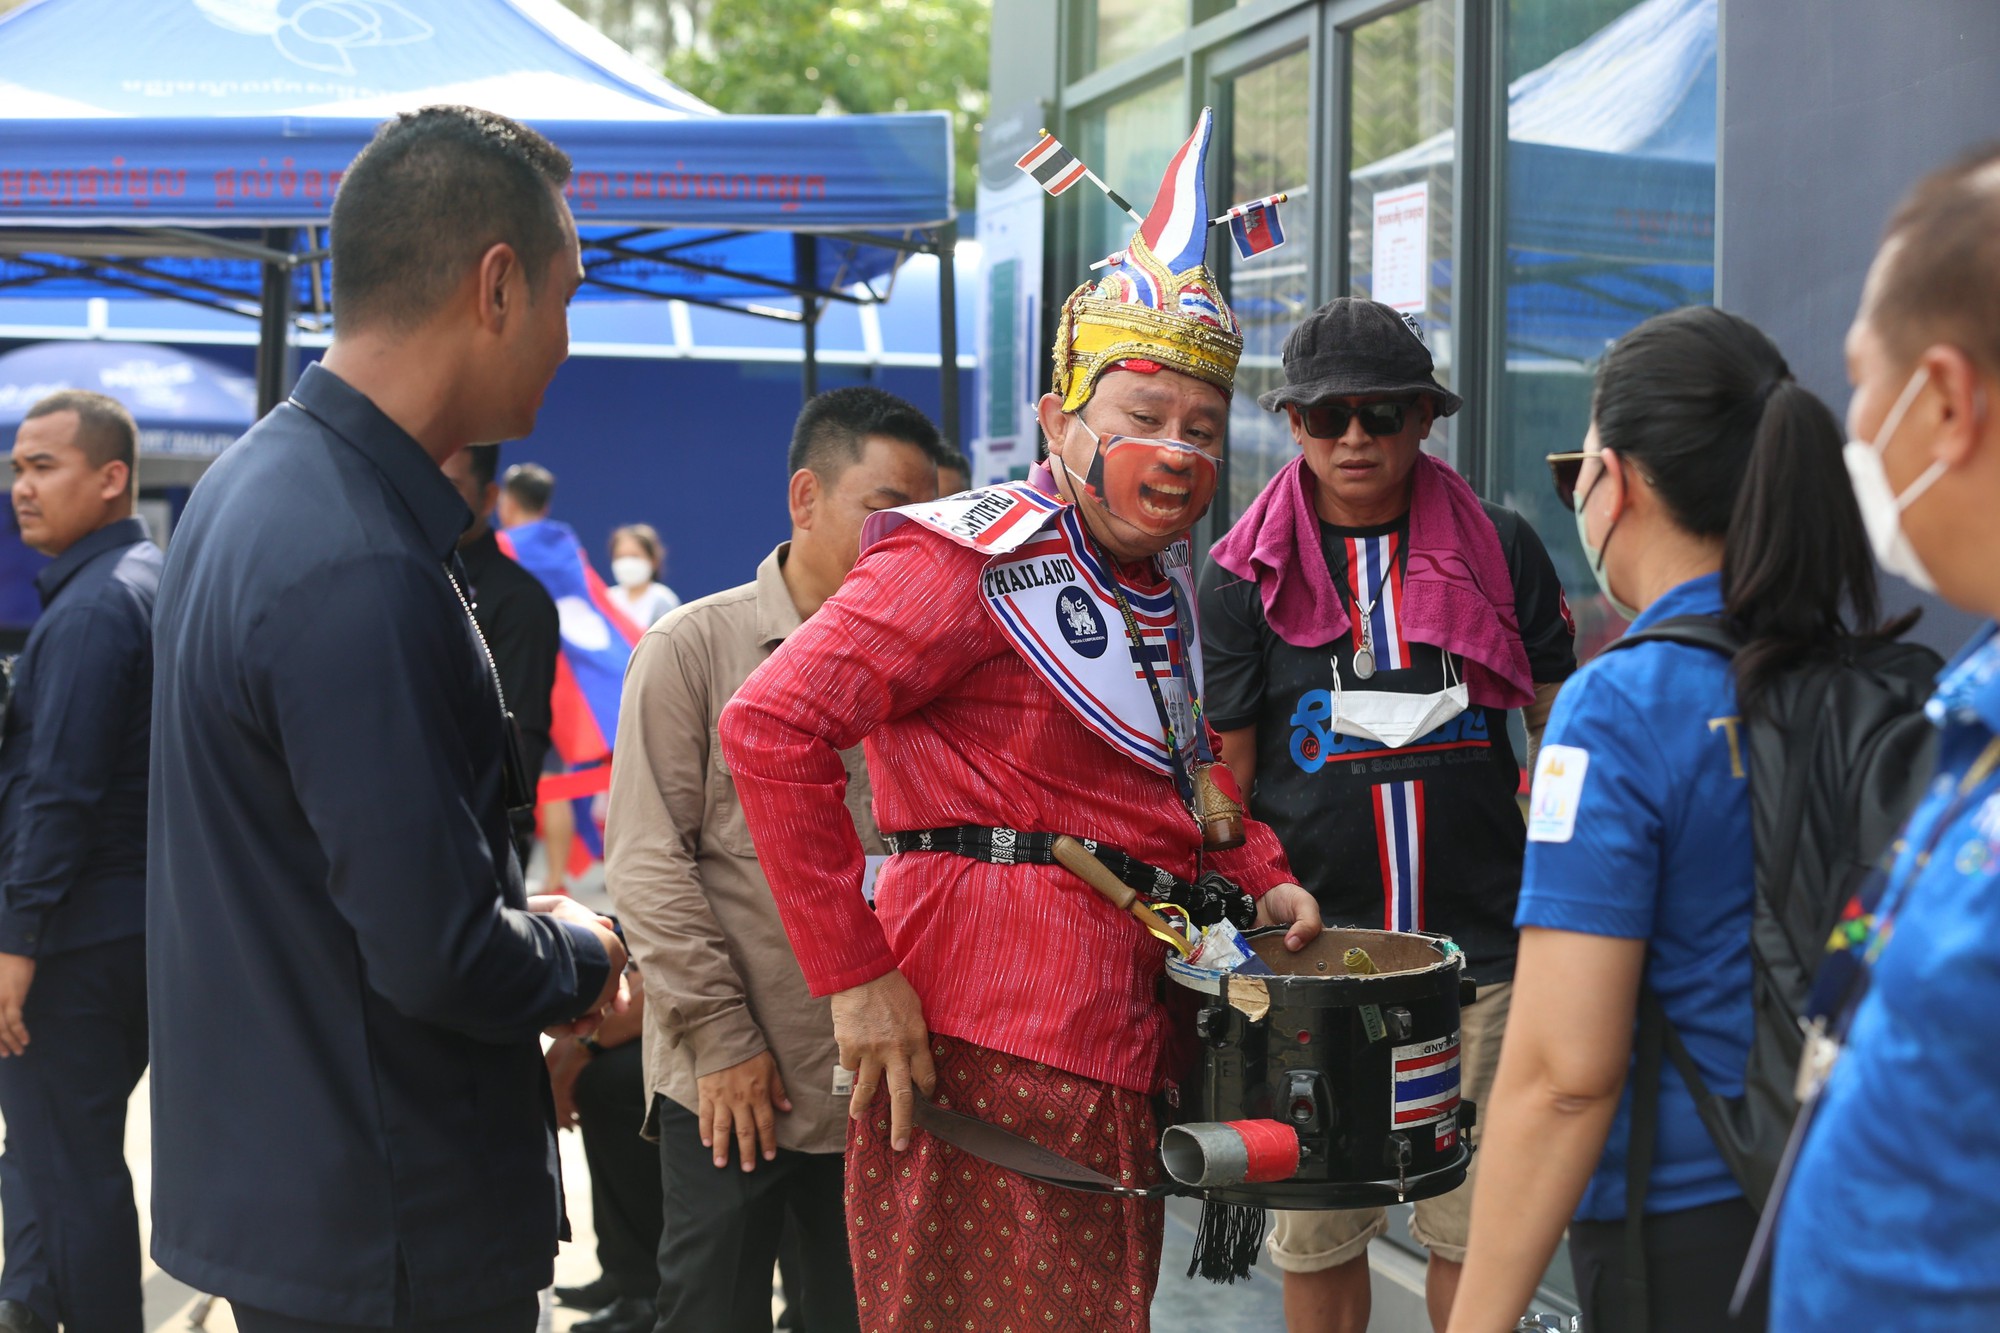 An ninh Campuchia cấm CĐV Thái Lan mang trống vào sân cổ vũ - Ảnh 2.